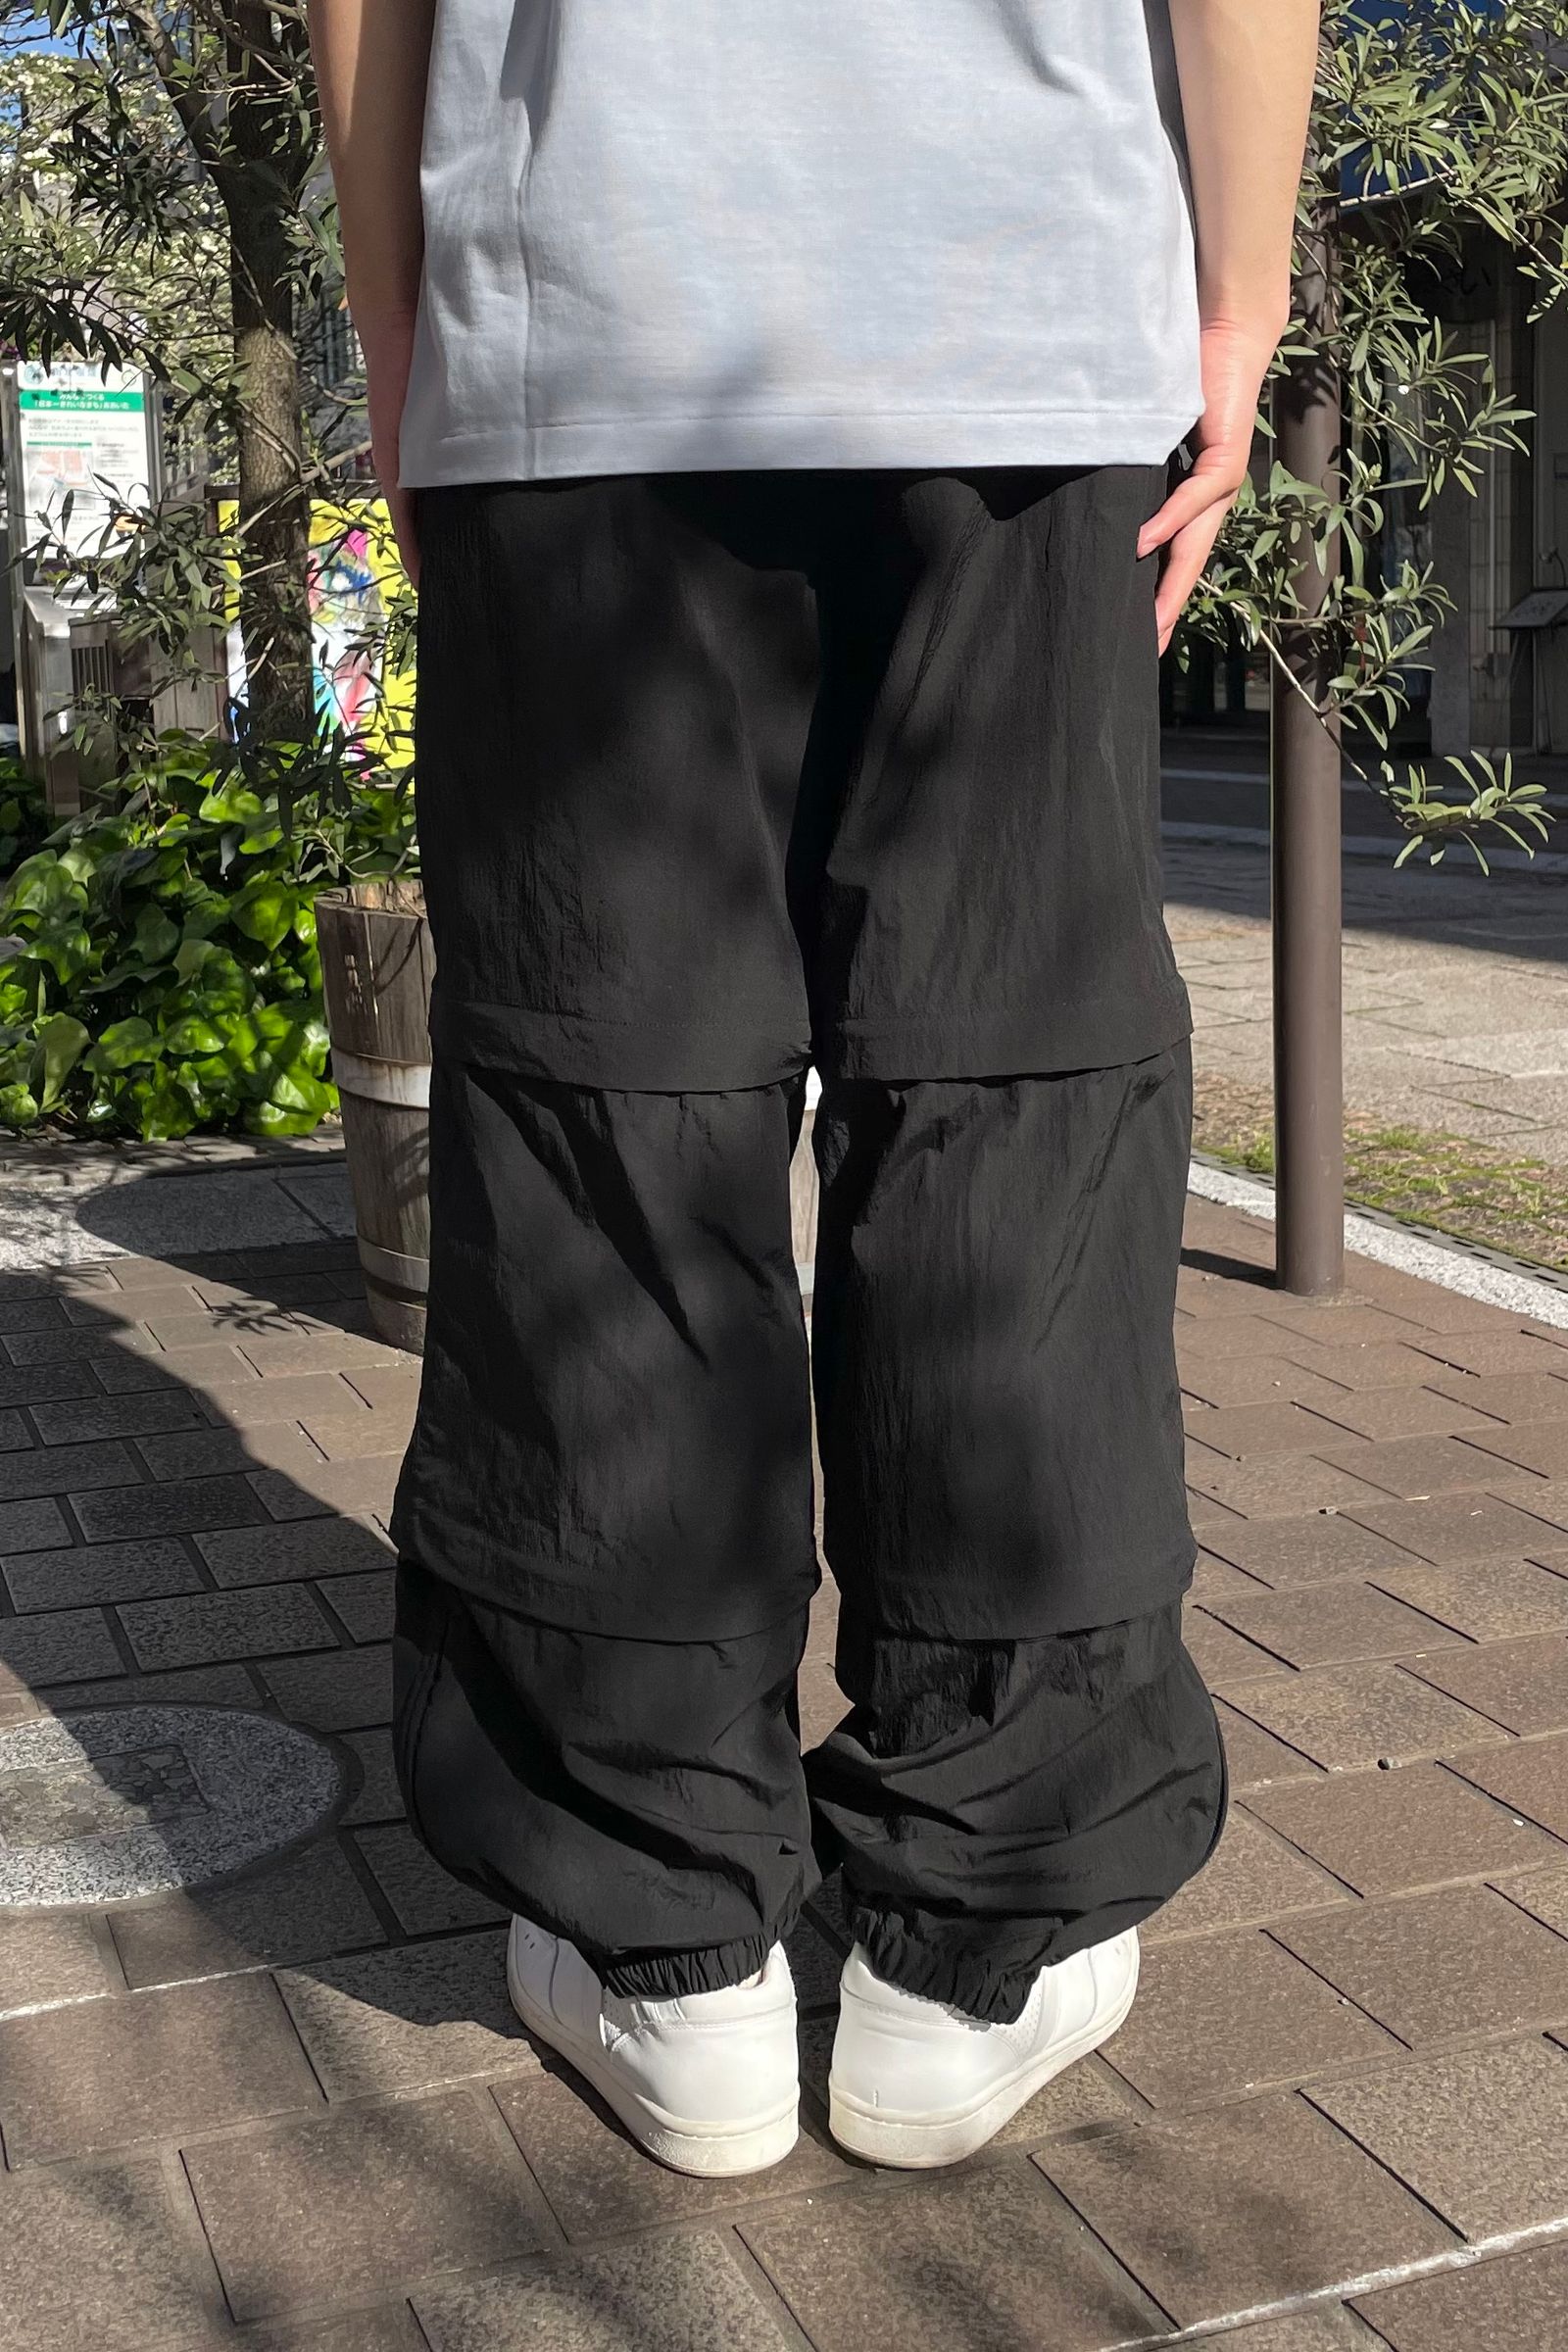 DAIWA PIER39 - tech 3way windbreaker pants - black- 23ss men 